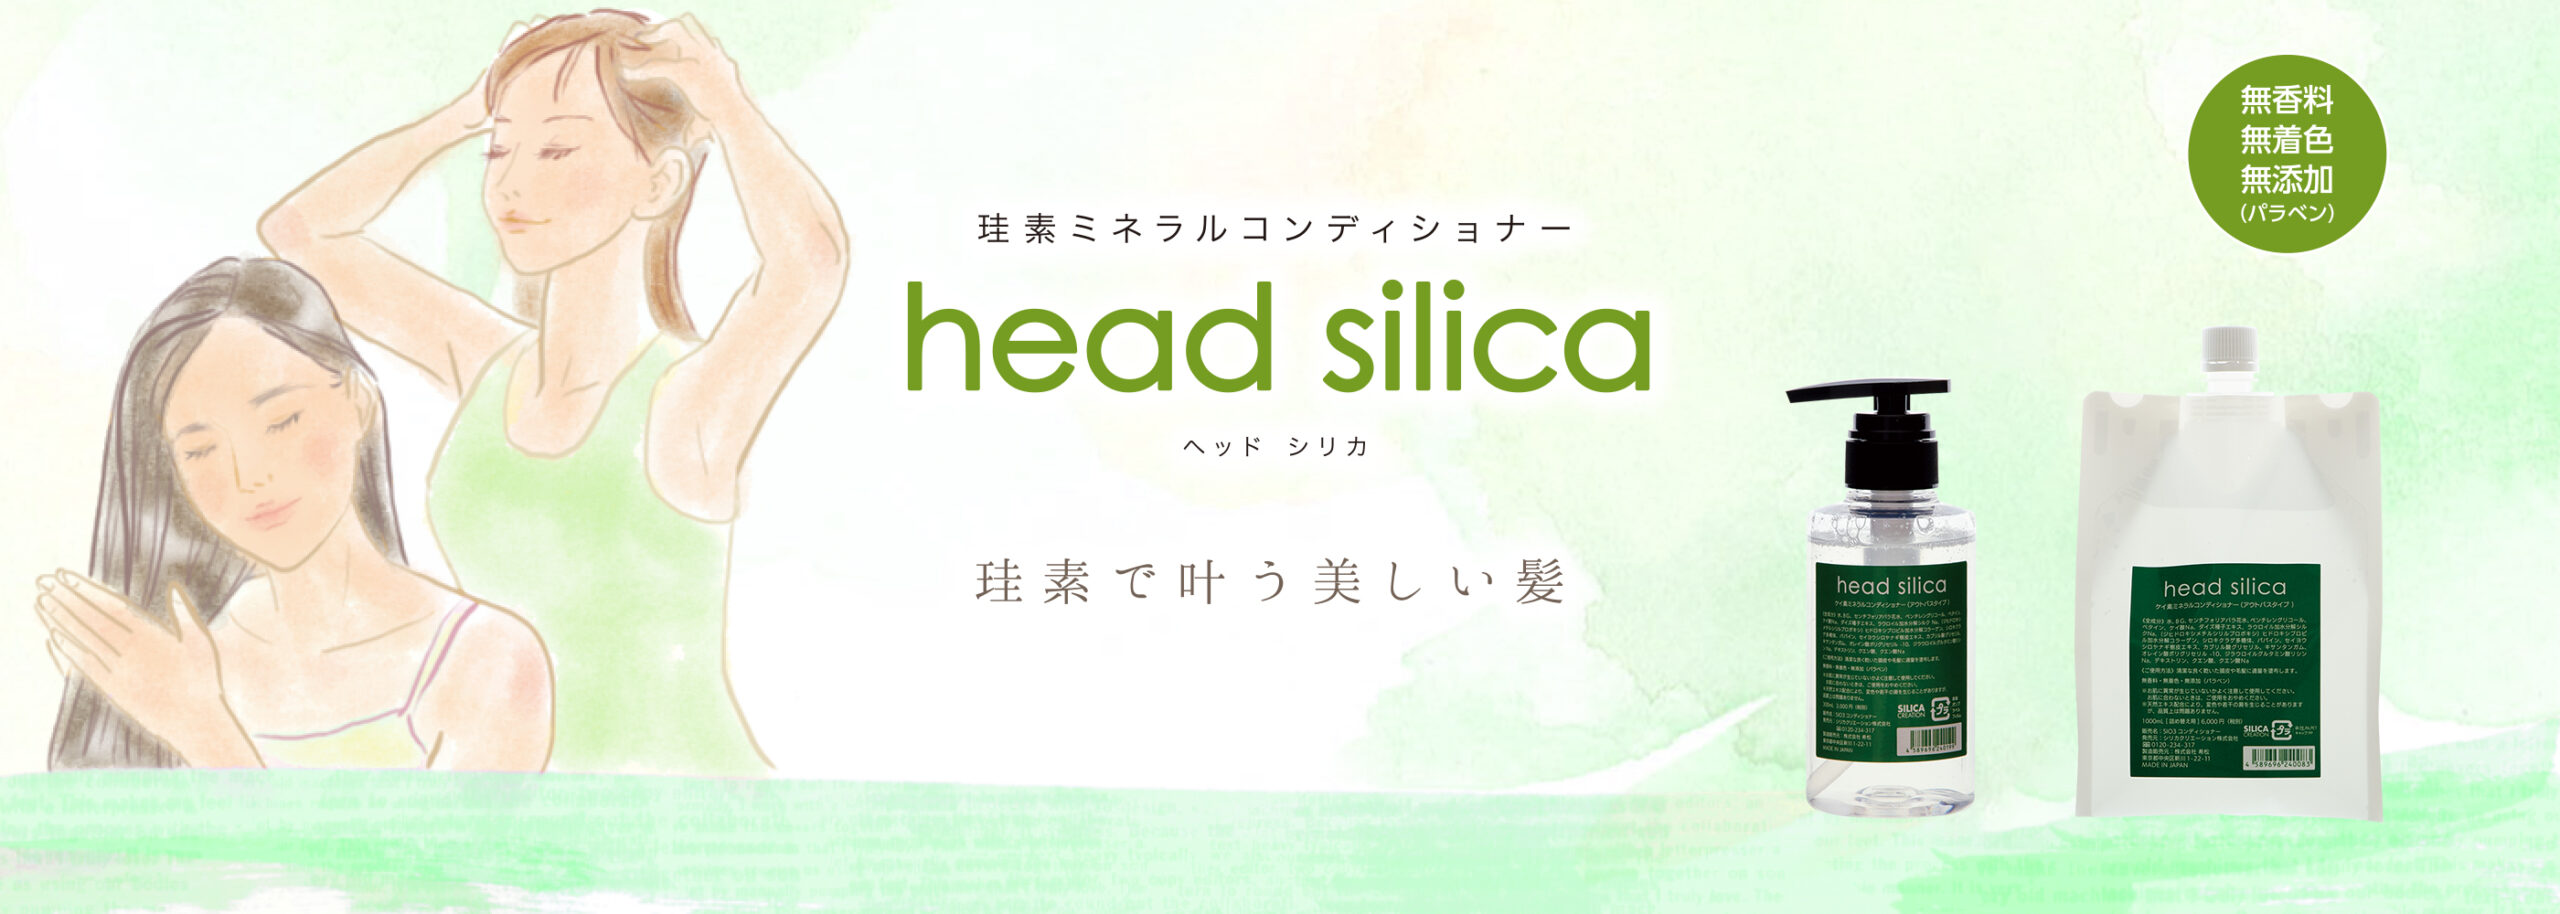 head silica - SILICA CREATION